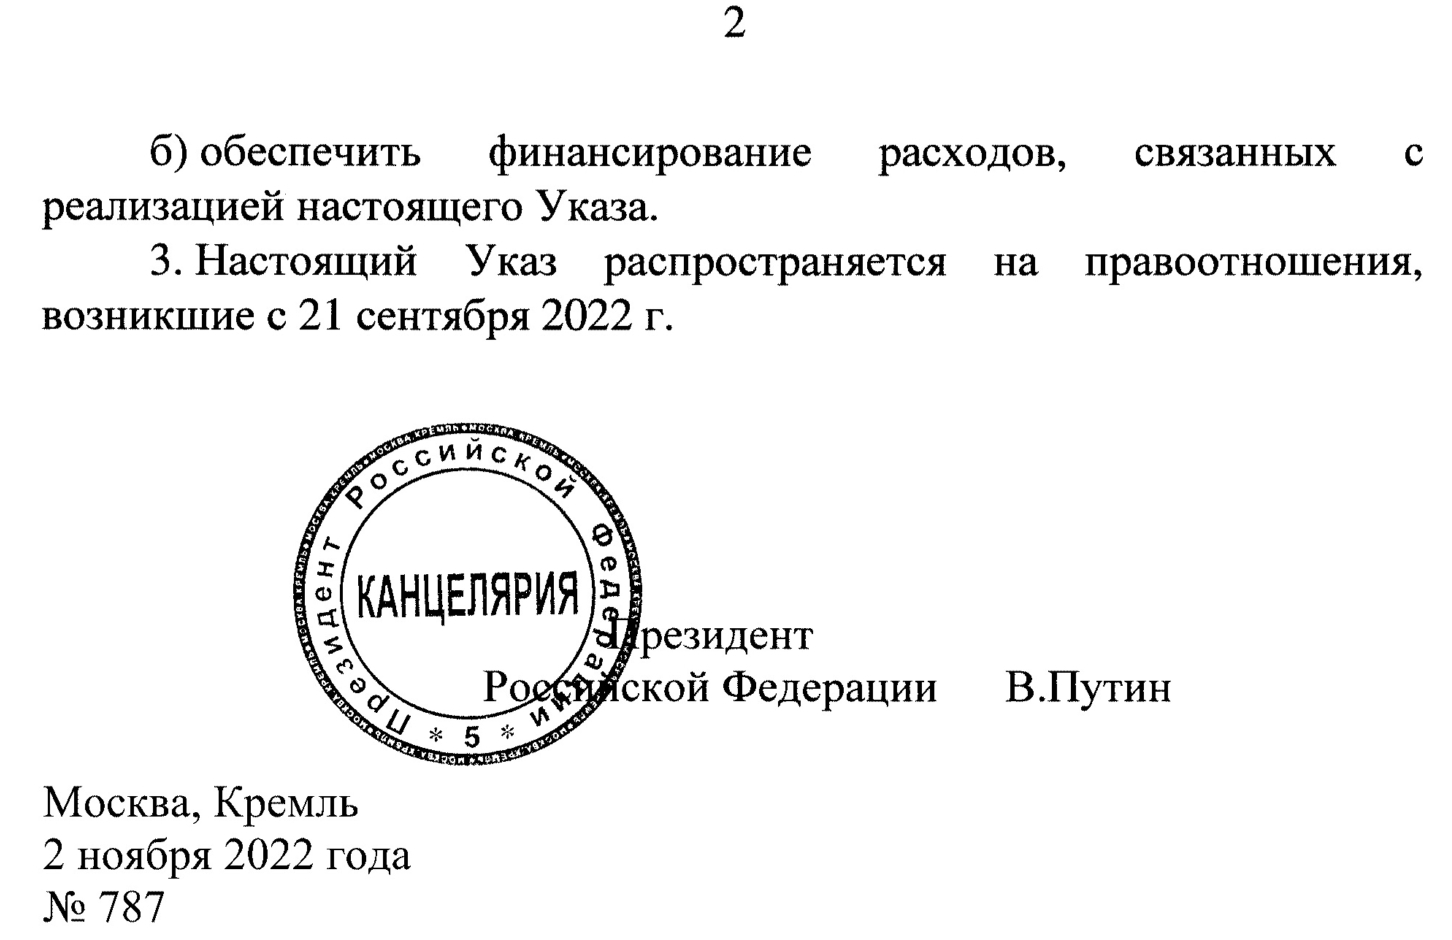 Указ президента российской федерации 647